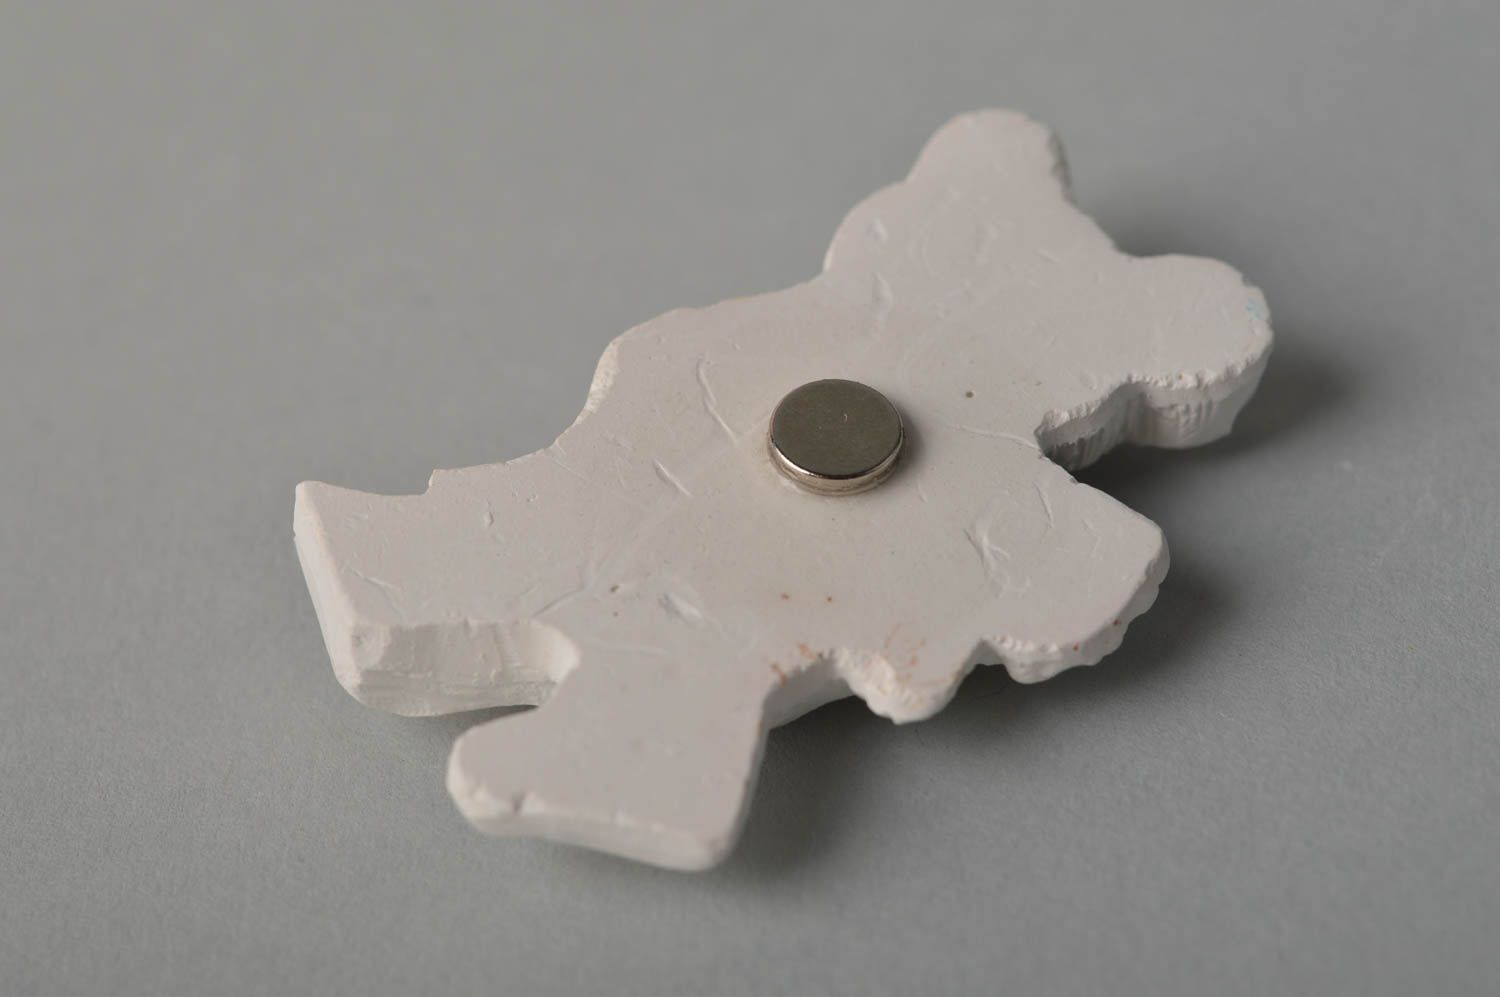 Handmade figurine designer magnet for fridge plaster magnet blank for painting photo 2